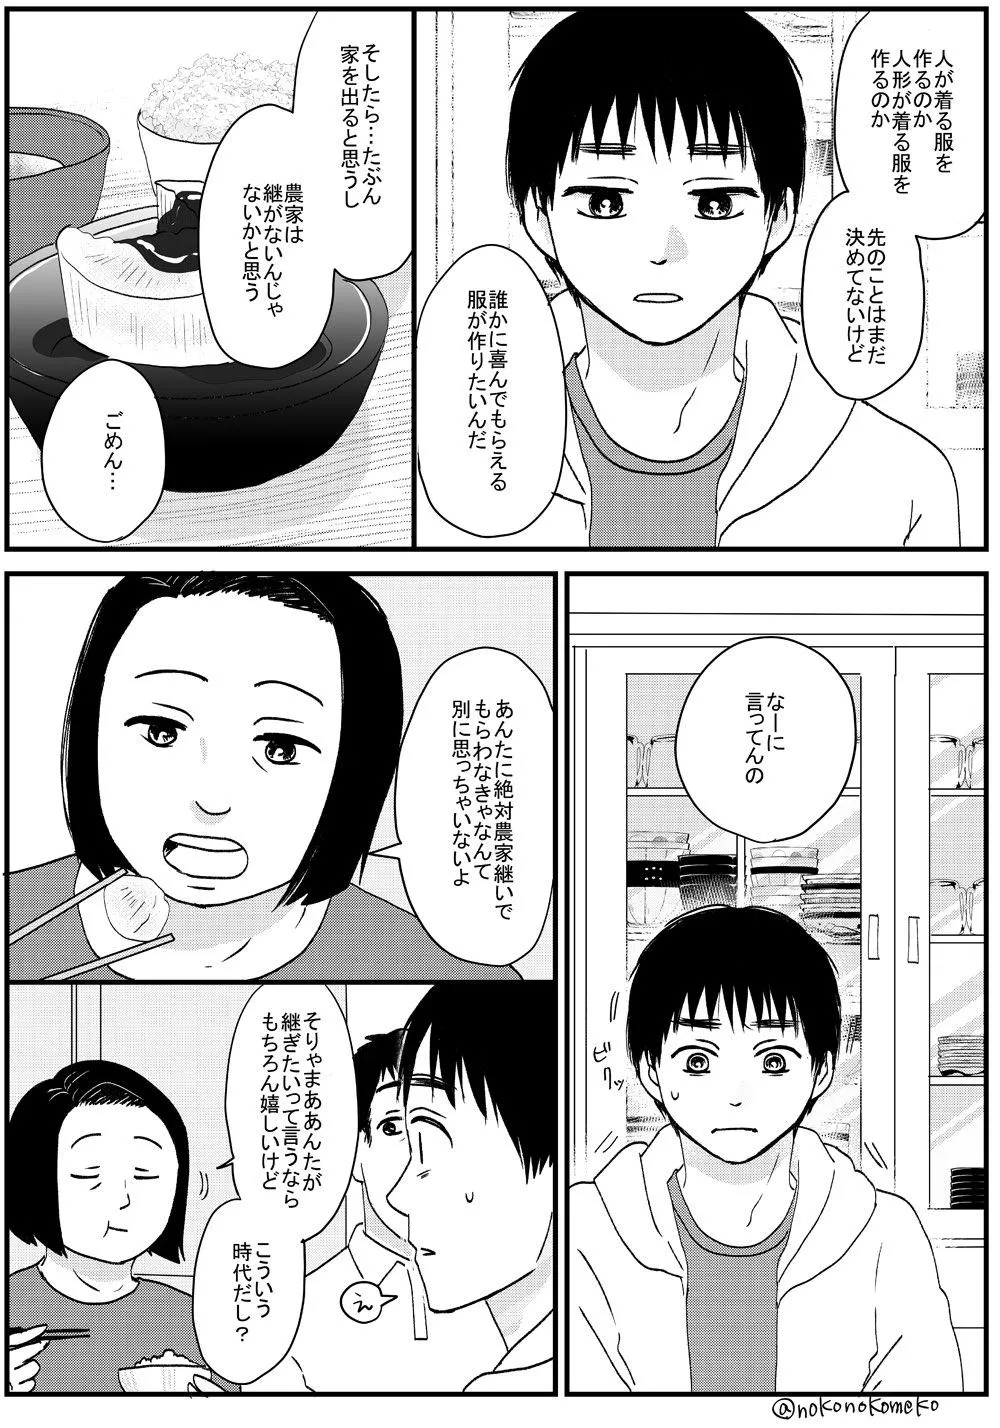 『喋る大根と少年が出会ってツイッターデビューする漫画』27